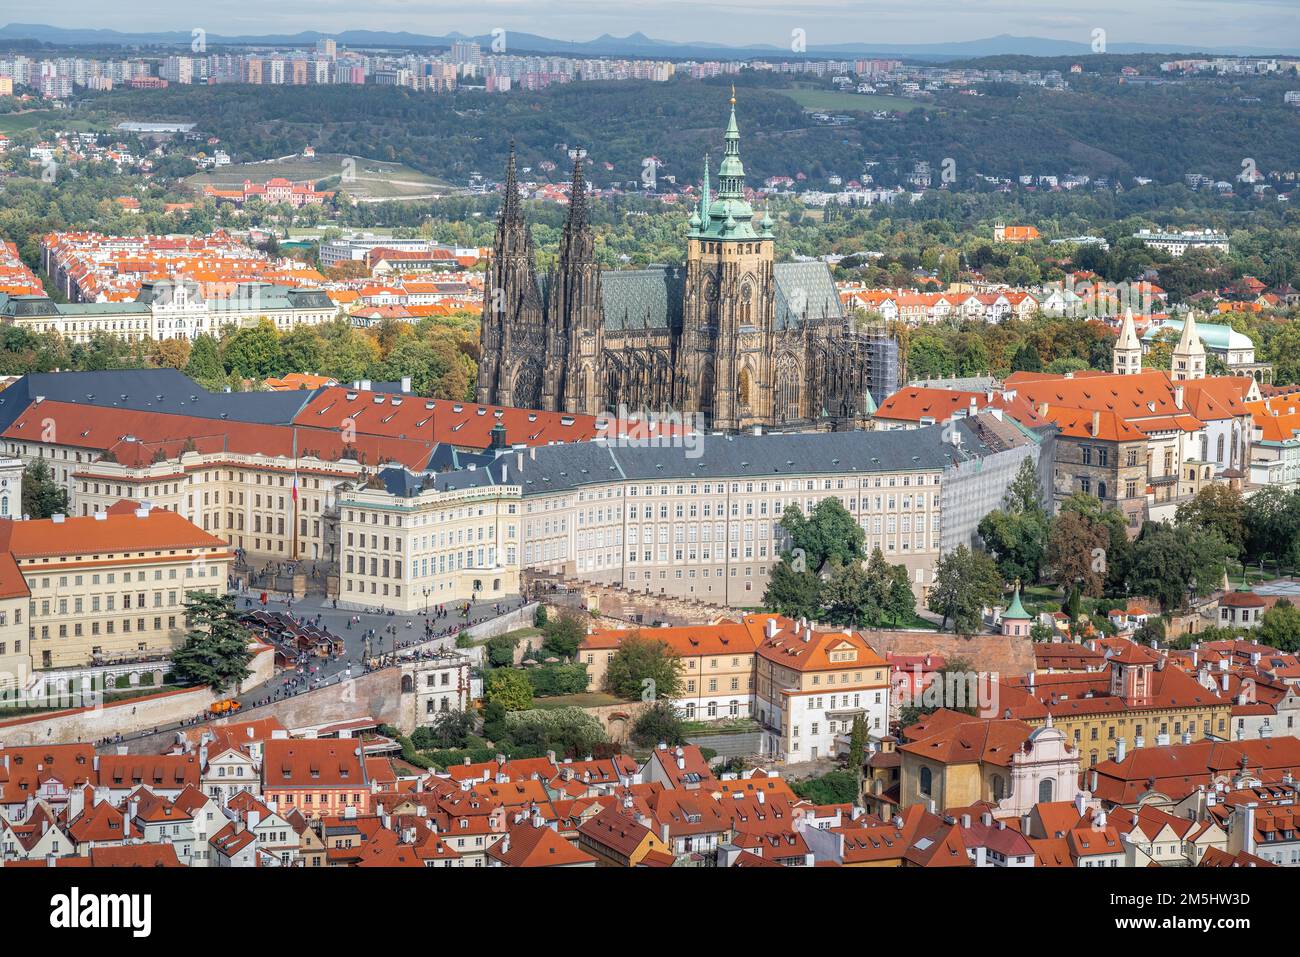 Vue aérienne du château de Prague et de la cathédrale Saint-Vitus - Prague, République tchèque Banque D'Images